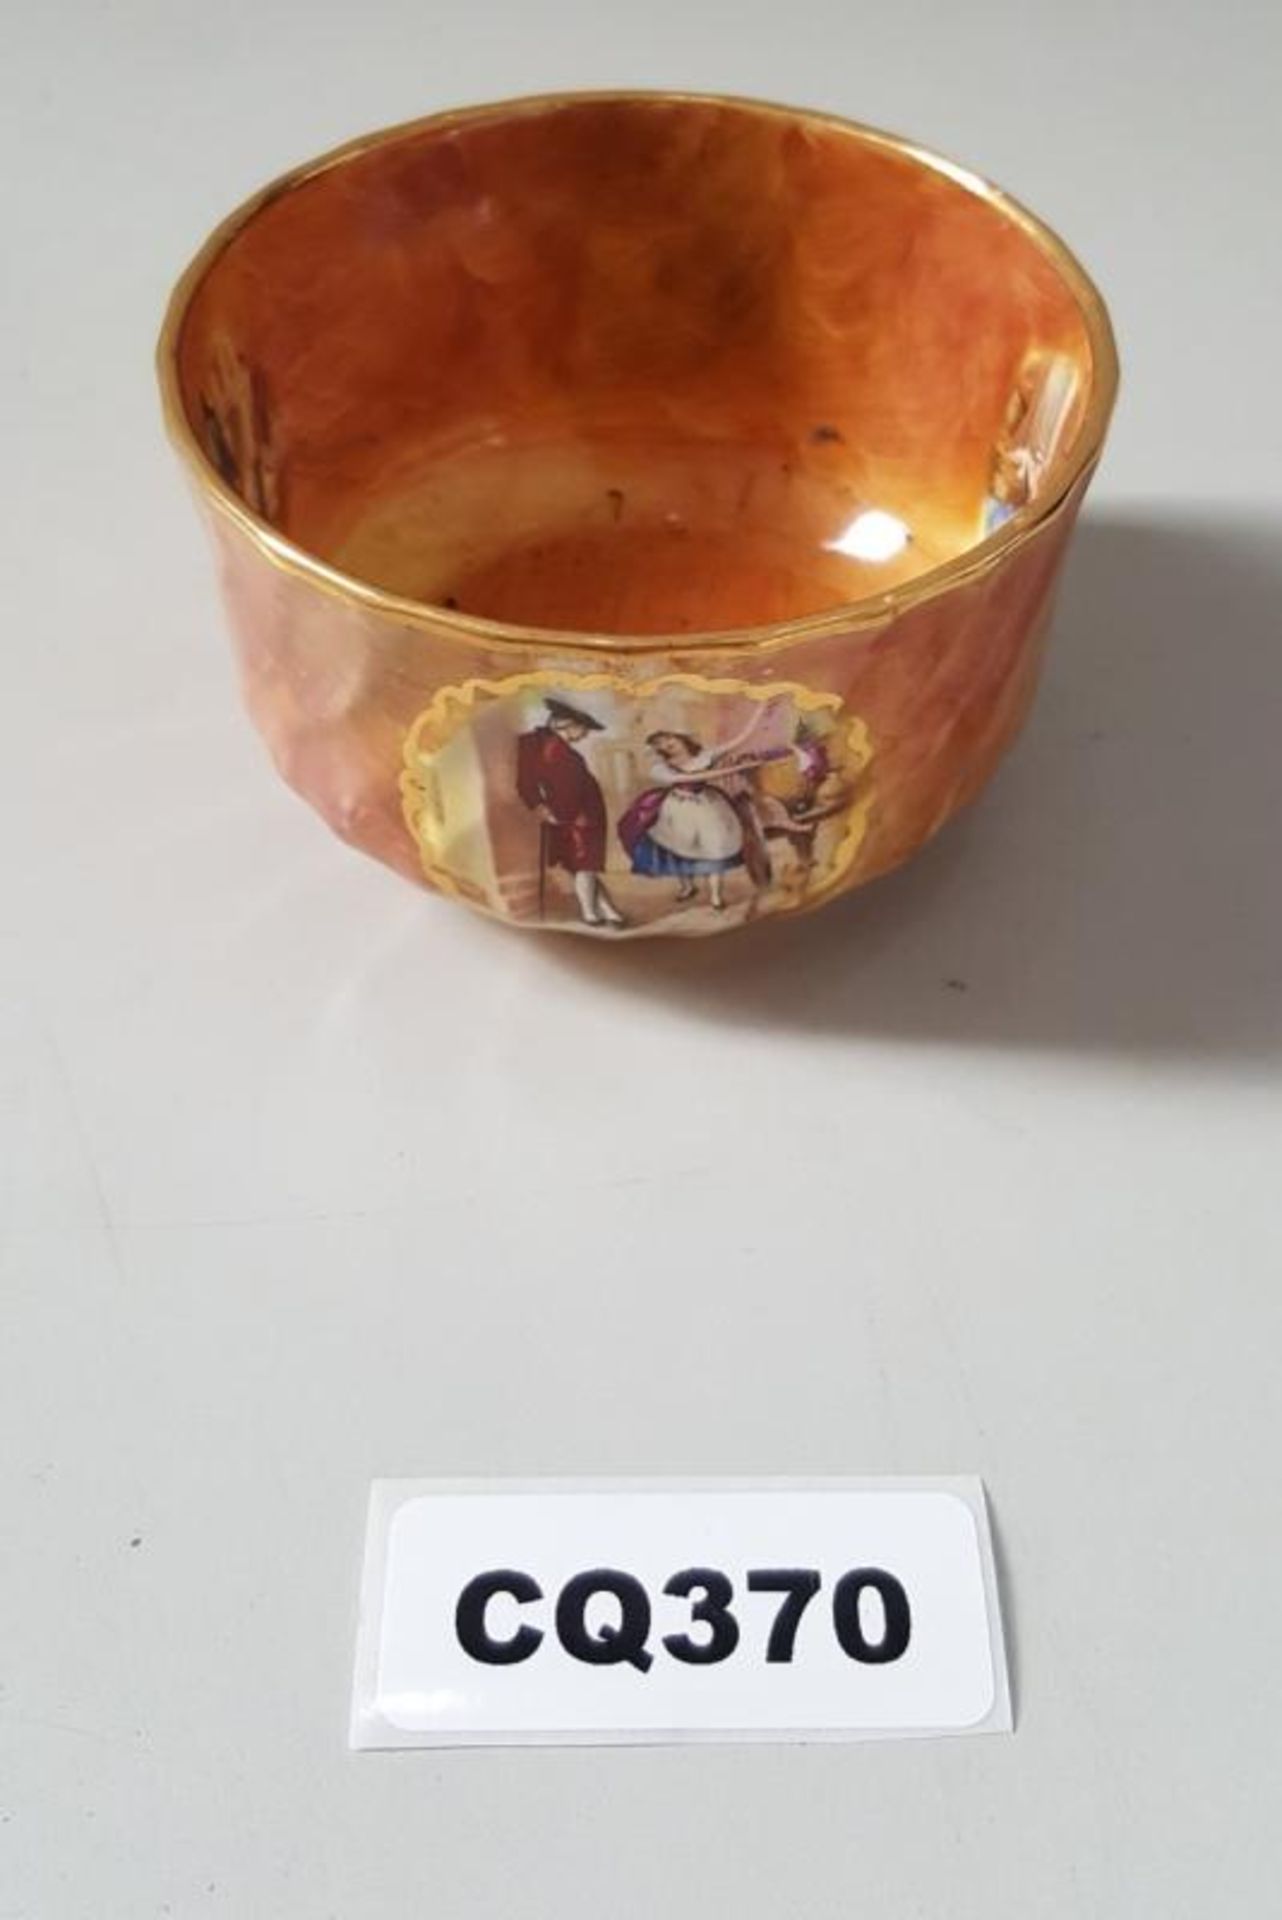 1 x Portmaster Bone China Small Orange Bowl - Ref CQ370 E - Dimensions: D10/H5cm- CL334 - Location: